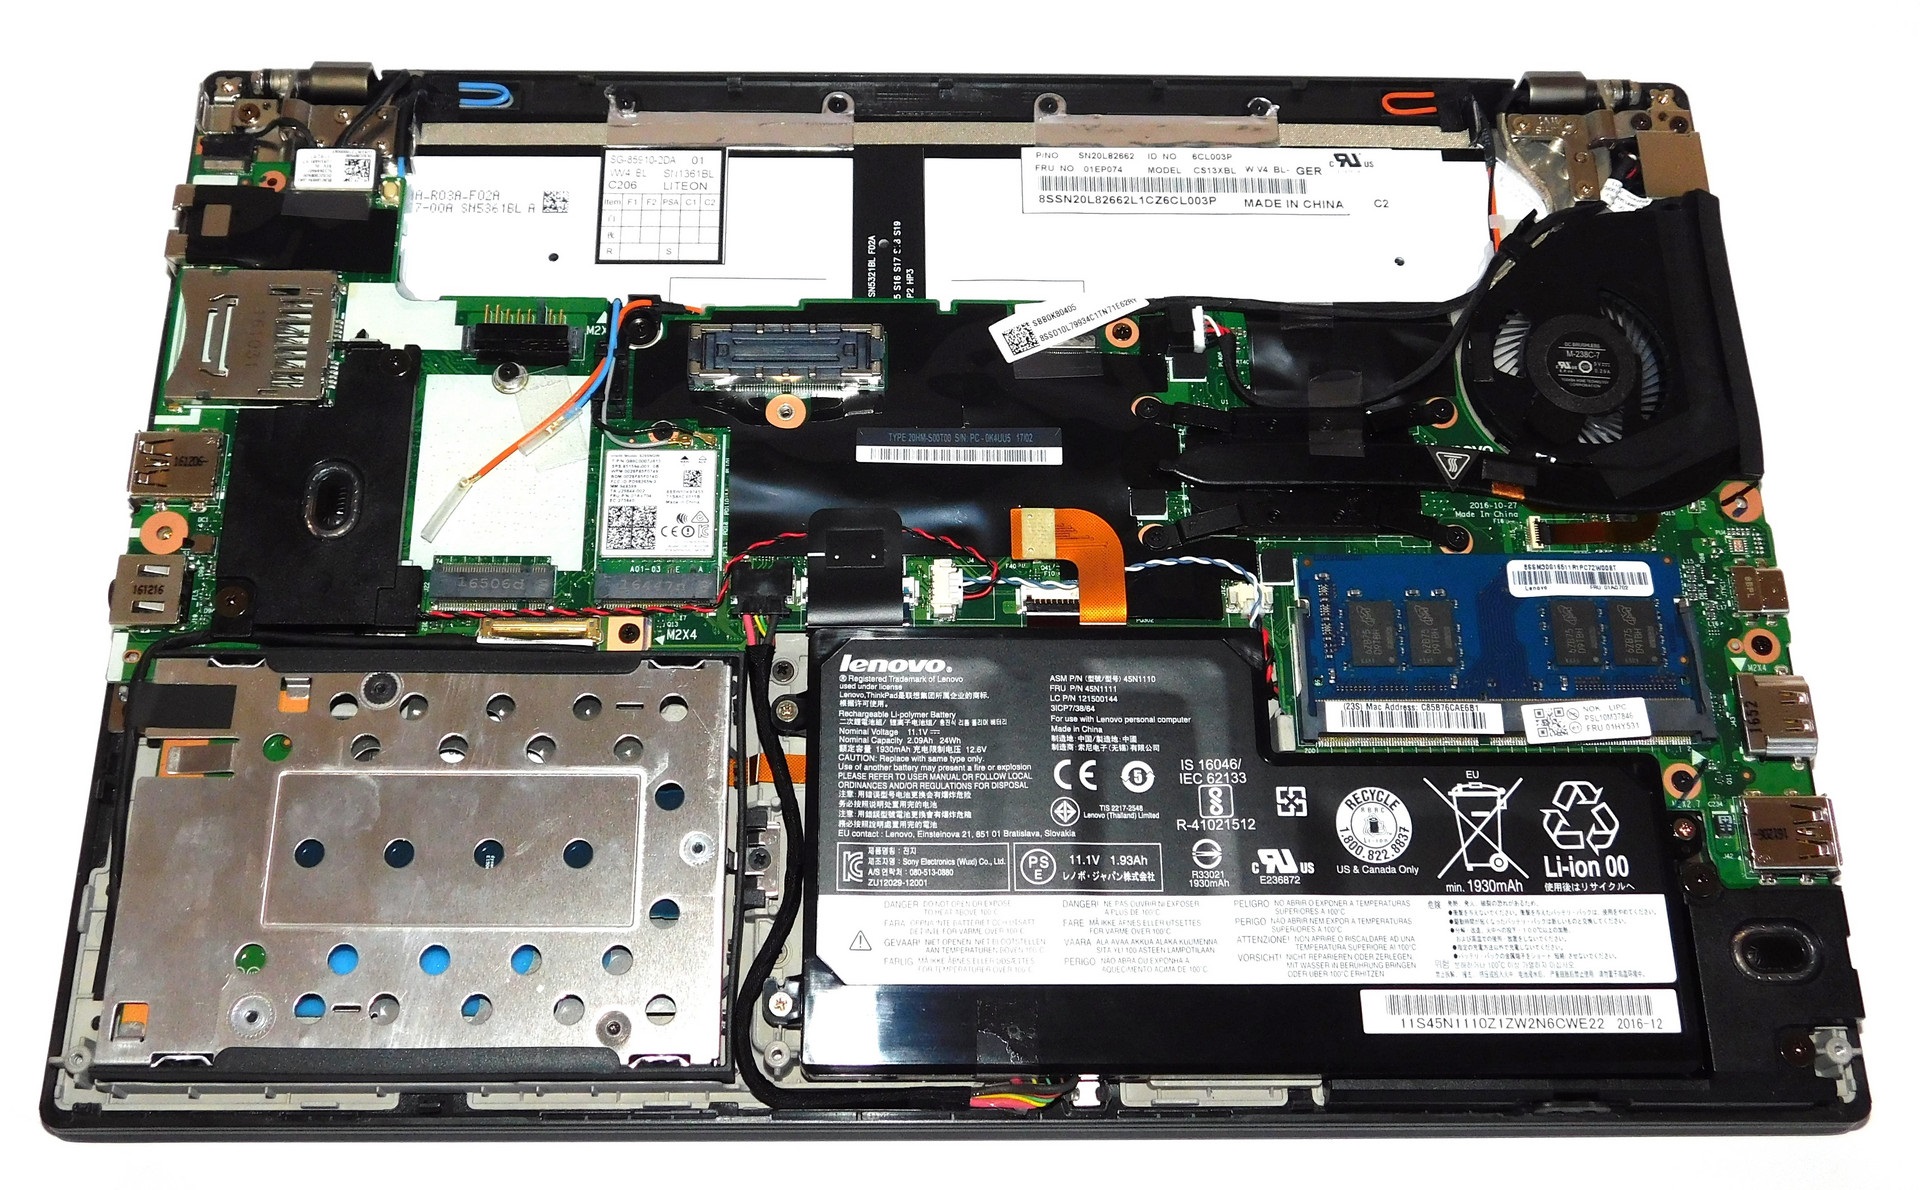 Đánh giá Laptop Lenovo ThinkPad X270: Nhỏ gọn, Mạnh mẽ, Chuyên trang tư vấn Laptop